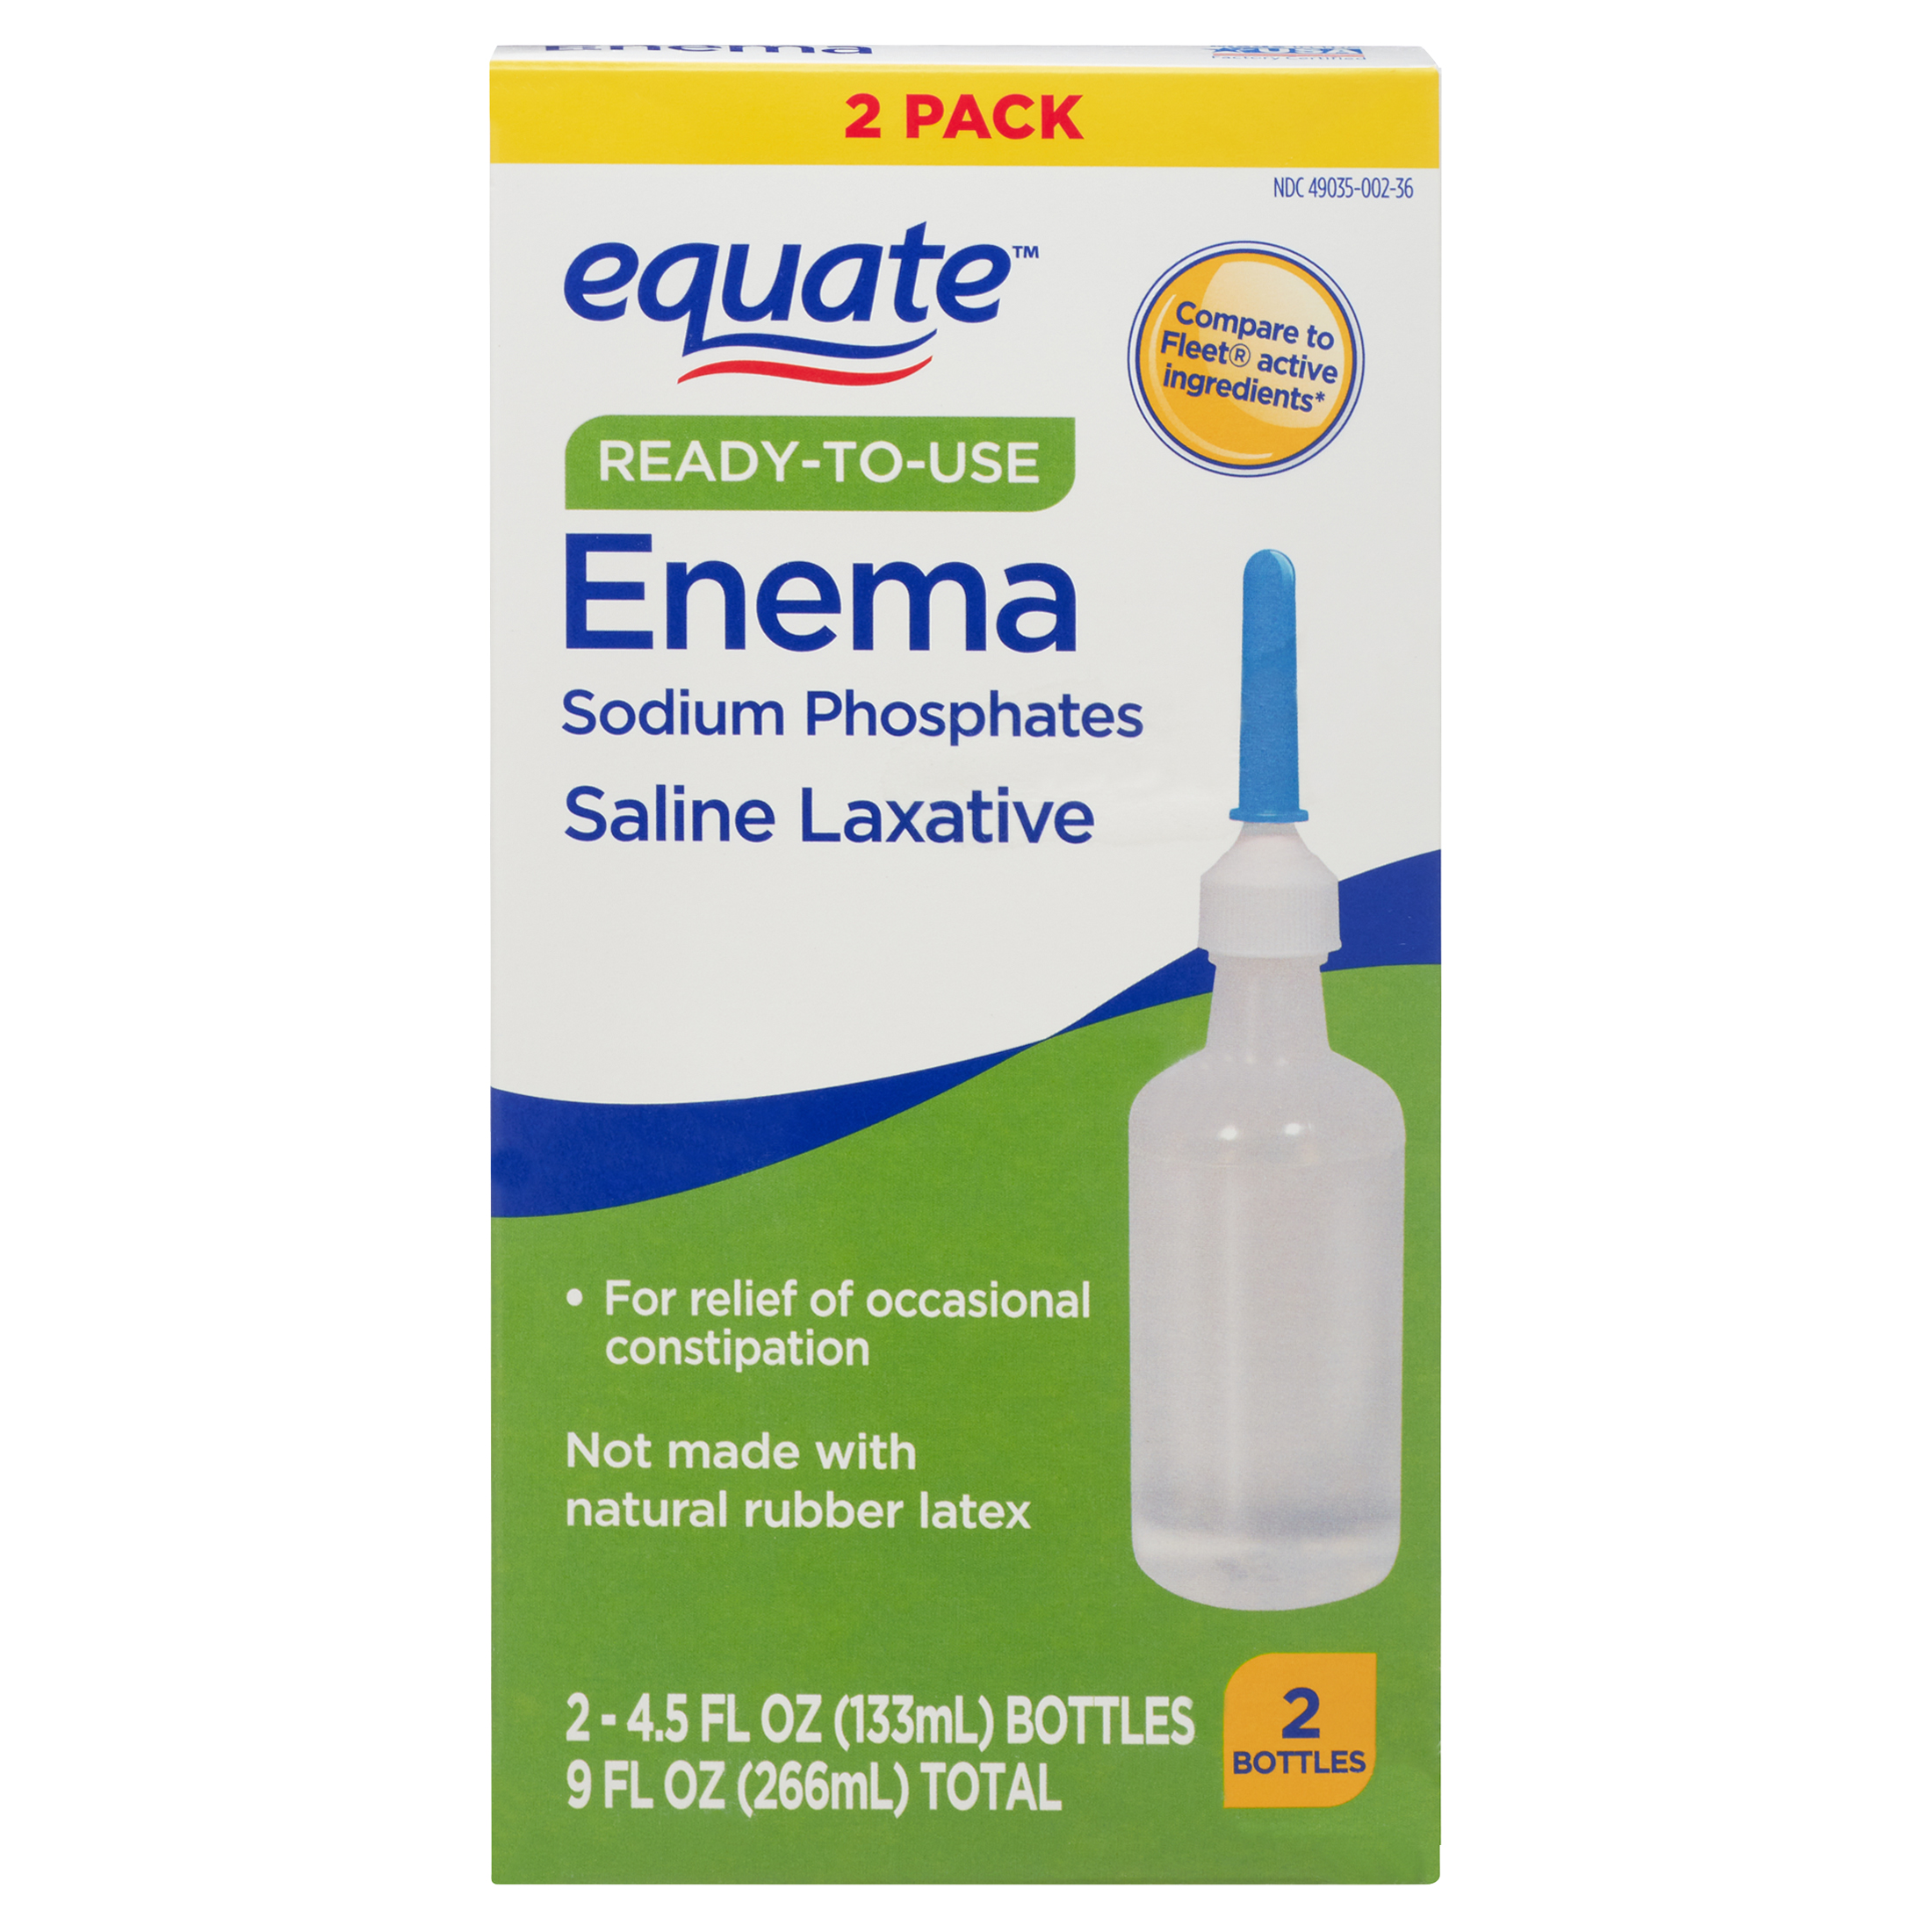 Equate Ready-to-Use Enema Sodium Phosphates Saline Laxative, 9 fl oz, 2 Pack - image 1 of 9